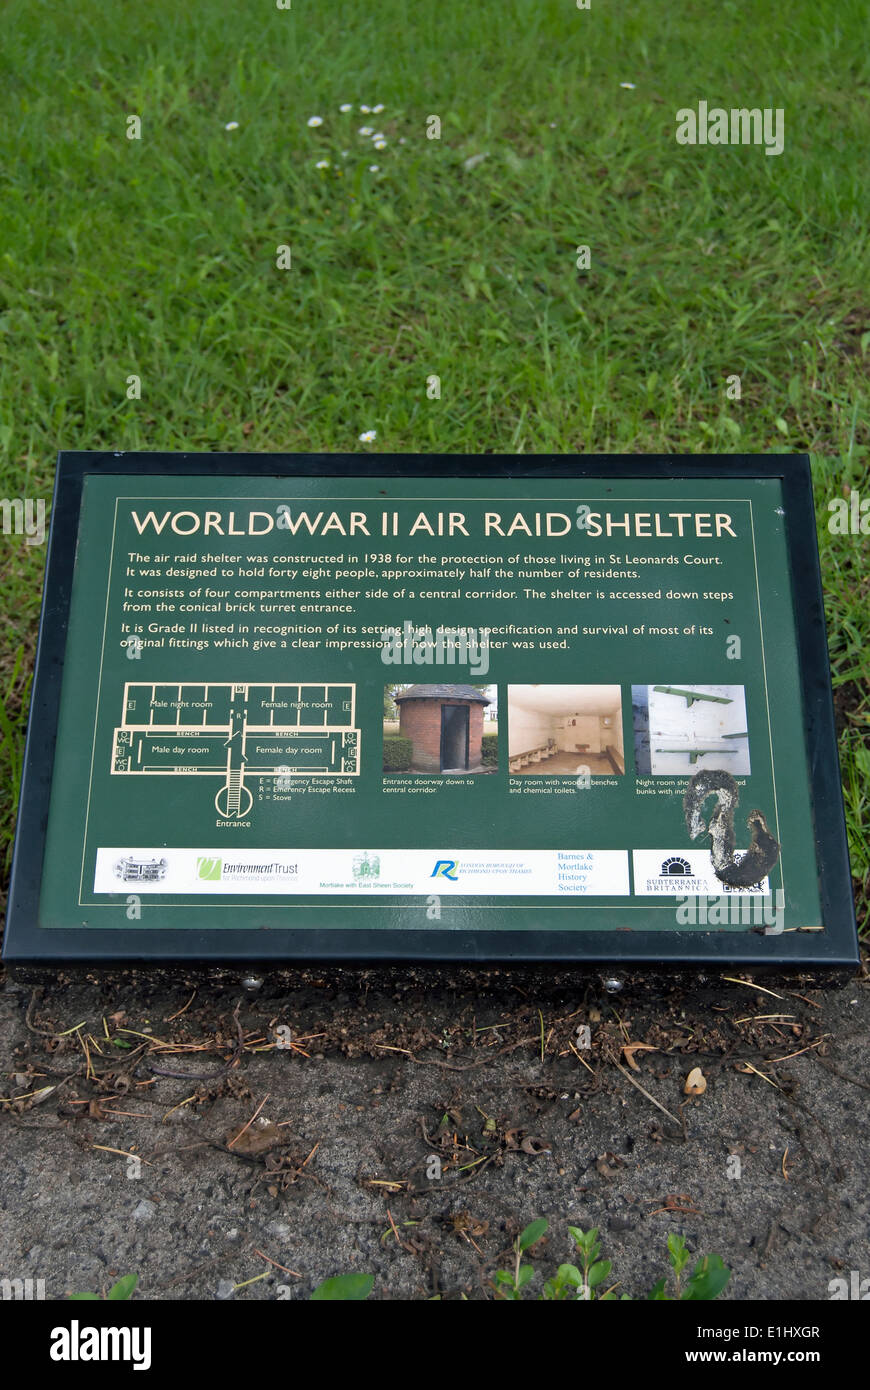 Segno di informazioni che descrivono una conservata la guerra mondiale due air raid shelter, East Sheen, a sud-ovest di Londra - Inghilterra Foto Stock